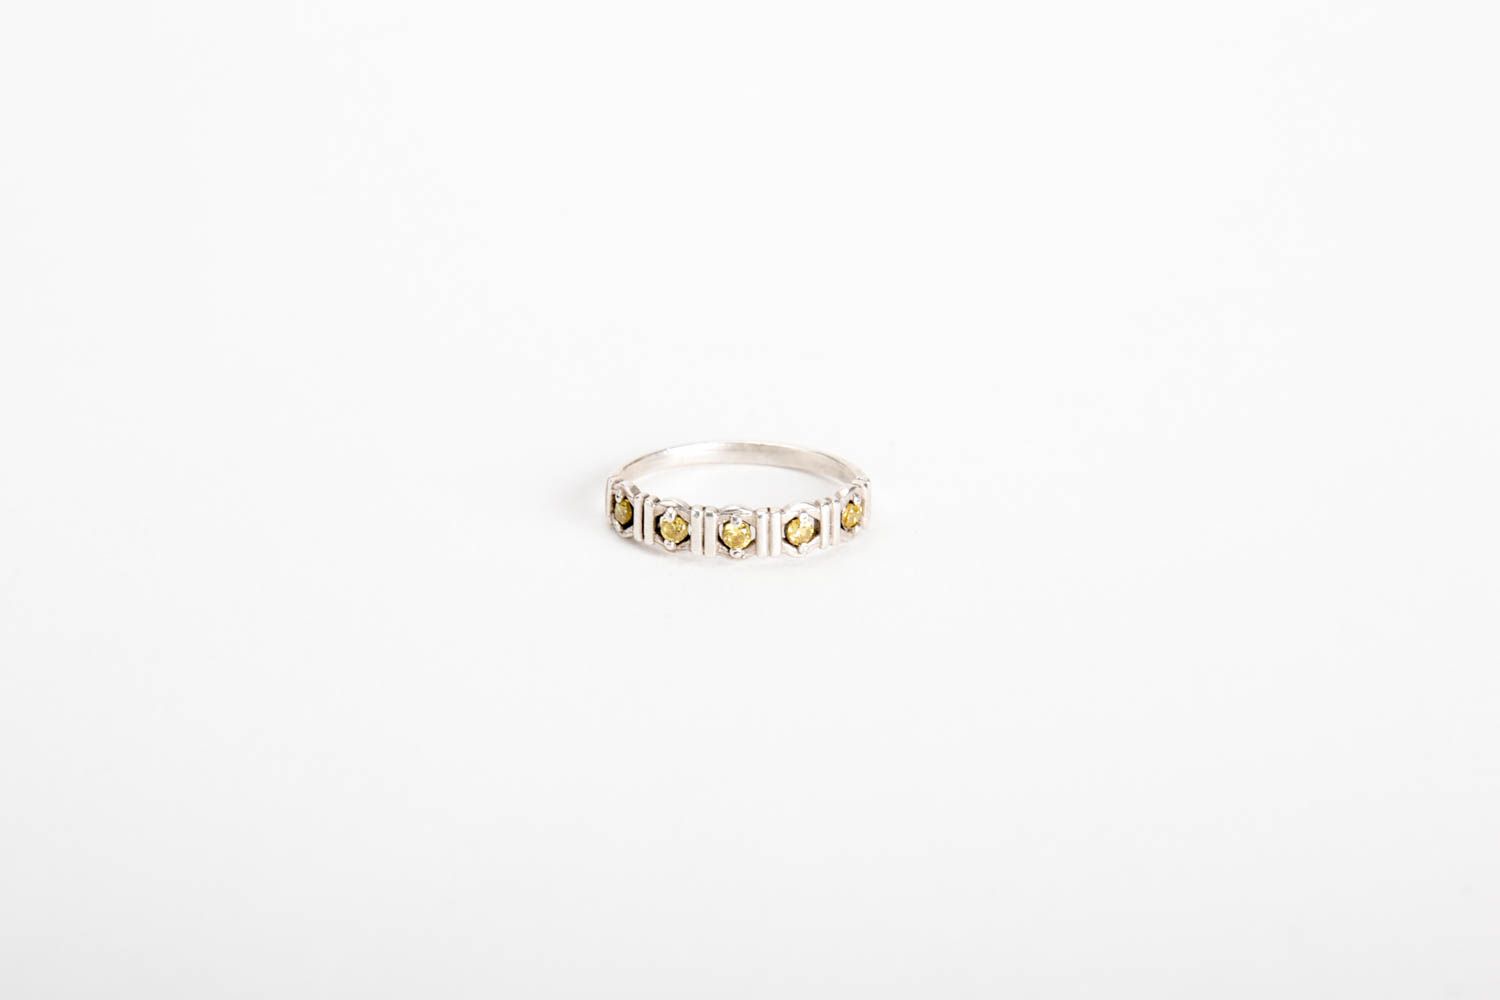 Damen Modeschmuck Mode Accessoires Finger Ring Geschenk Ideen Handarbeit schön foto 4